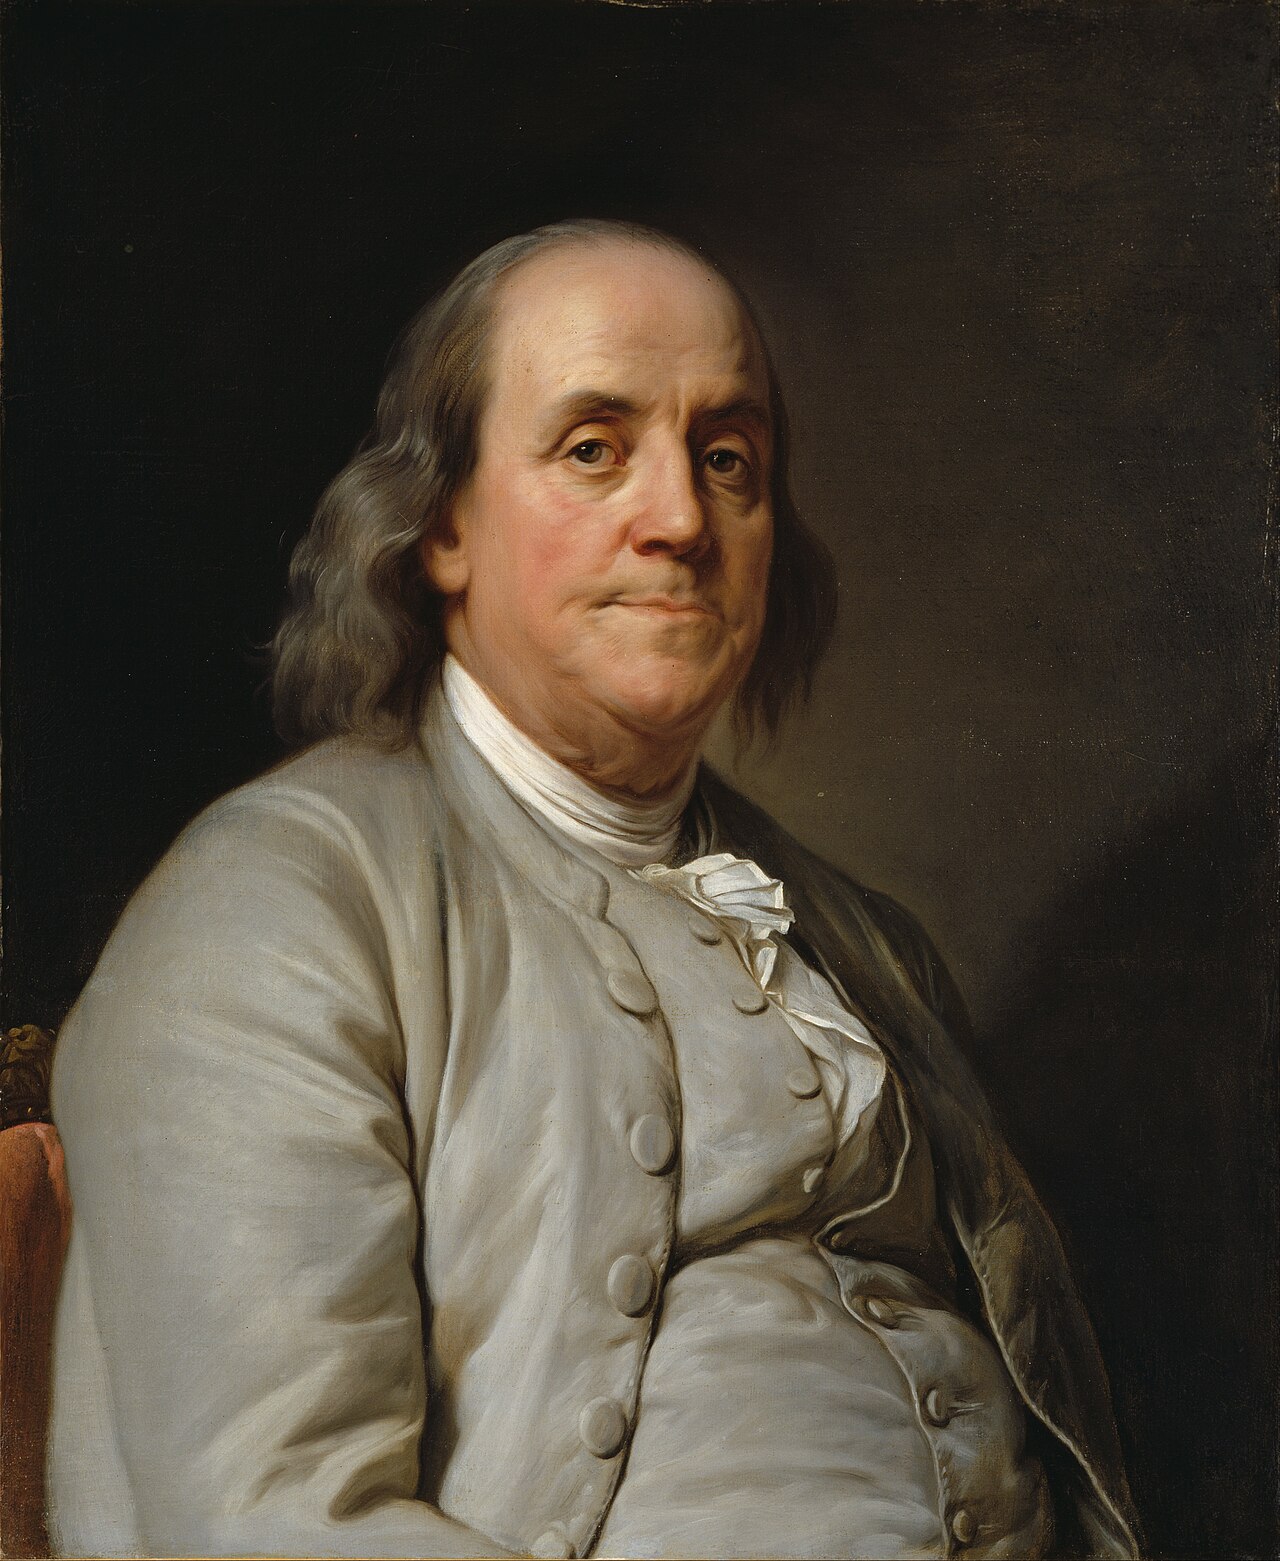 Retrato de Benjamin Franklin realizado en 1778 por el pintor francés Joseph-Siffred Duplessis.